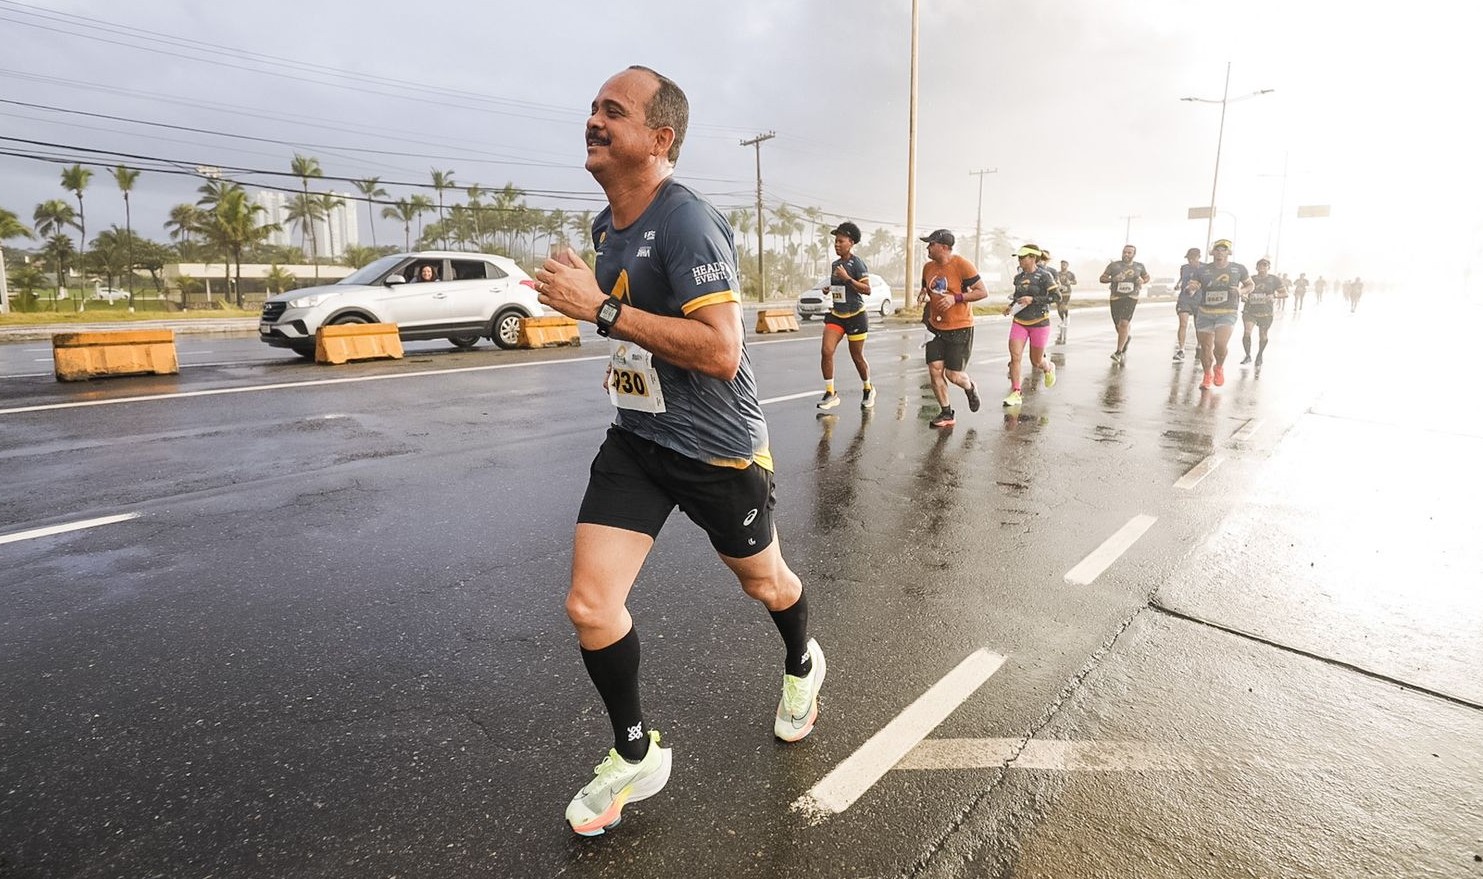 Aos 51 anos, Elinaldo participa de meia-maratona em Salvador